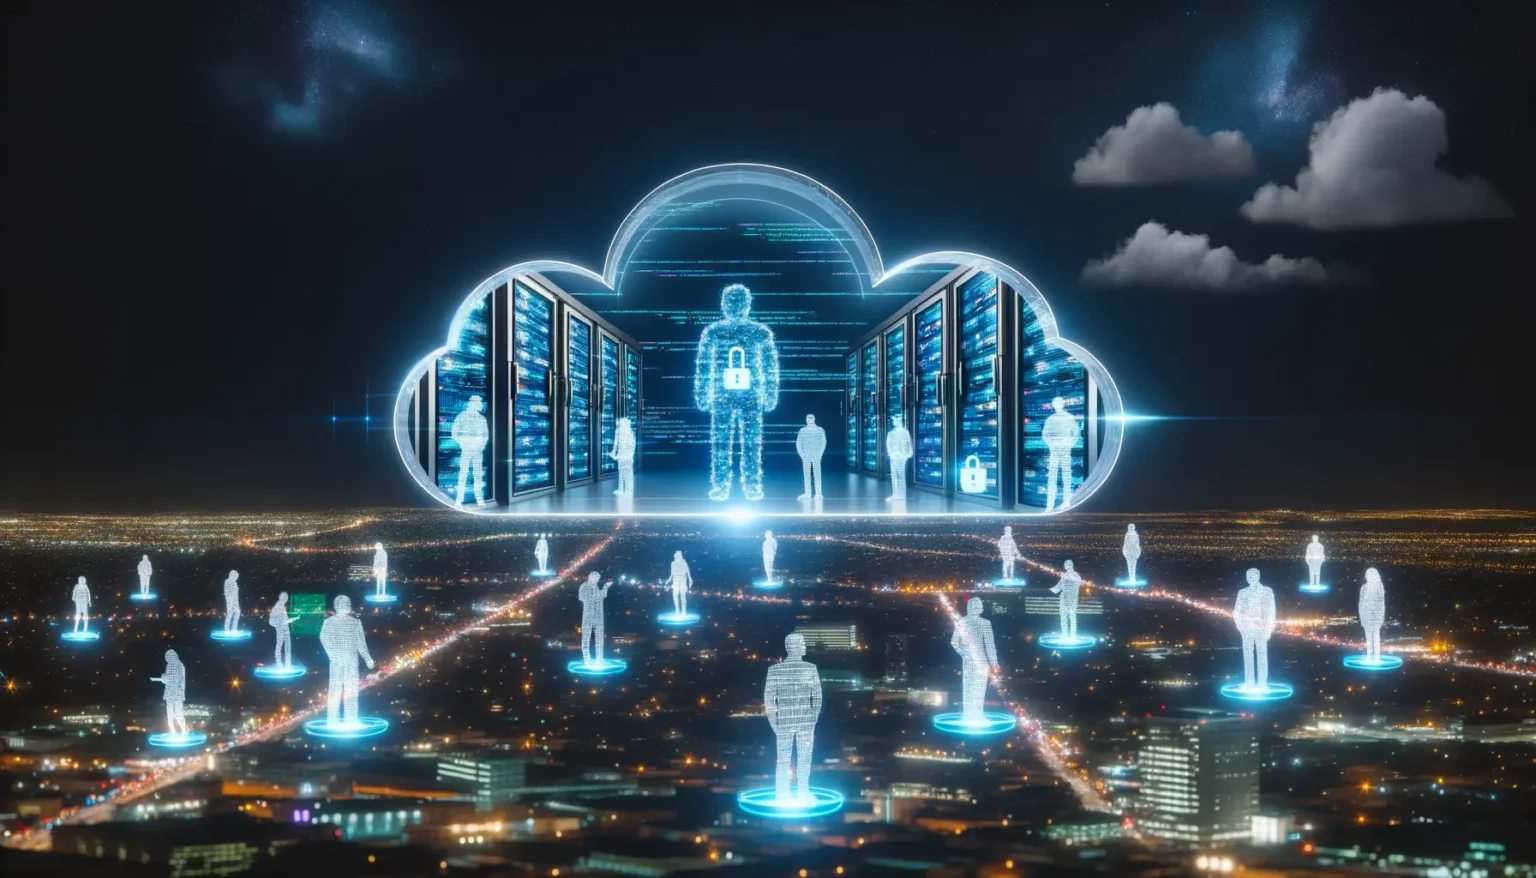 Digitale Darstellung eines Cloud-Computing-Konzepts über einer beleuchteten Stadt bei Nacht, mit leuchtenden, durchsichtigen Figuren, die über Strahlen mit einer zentralen Cloud-Struktur, von der aus weitere Figuren in einem Serverraum stehen, verbunden sind.